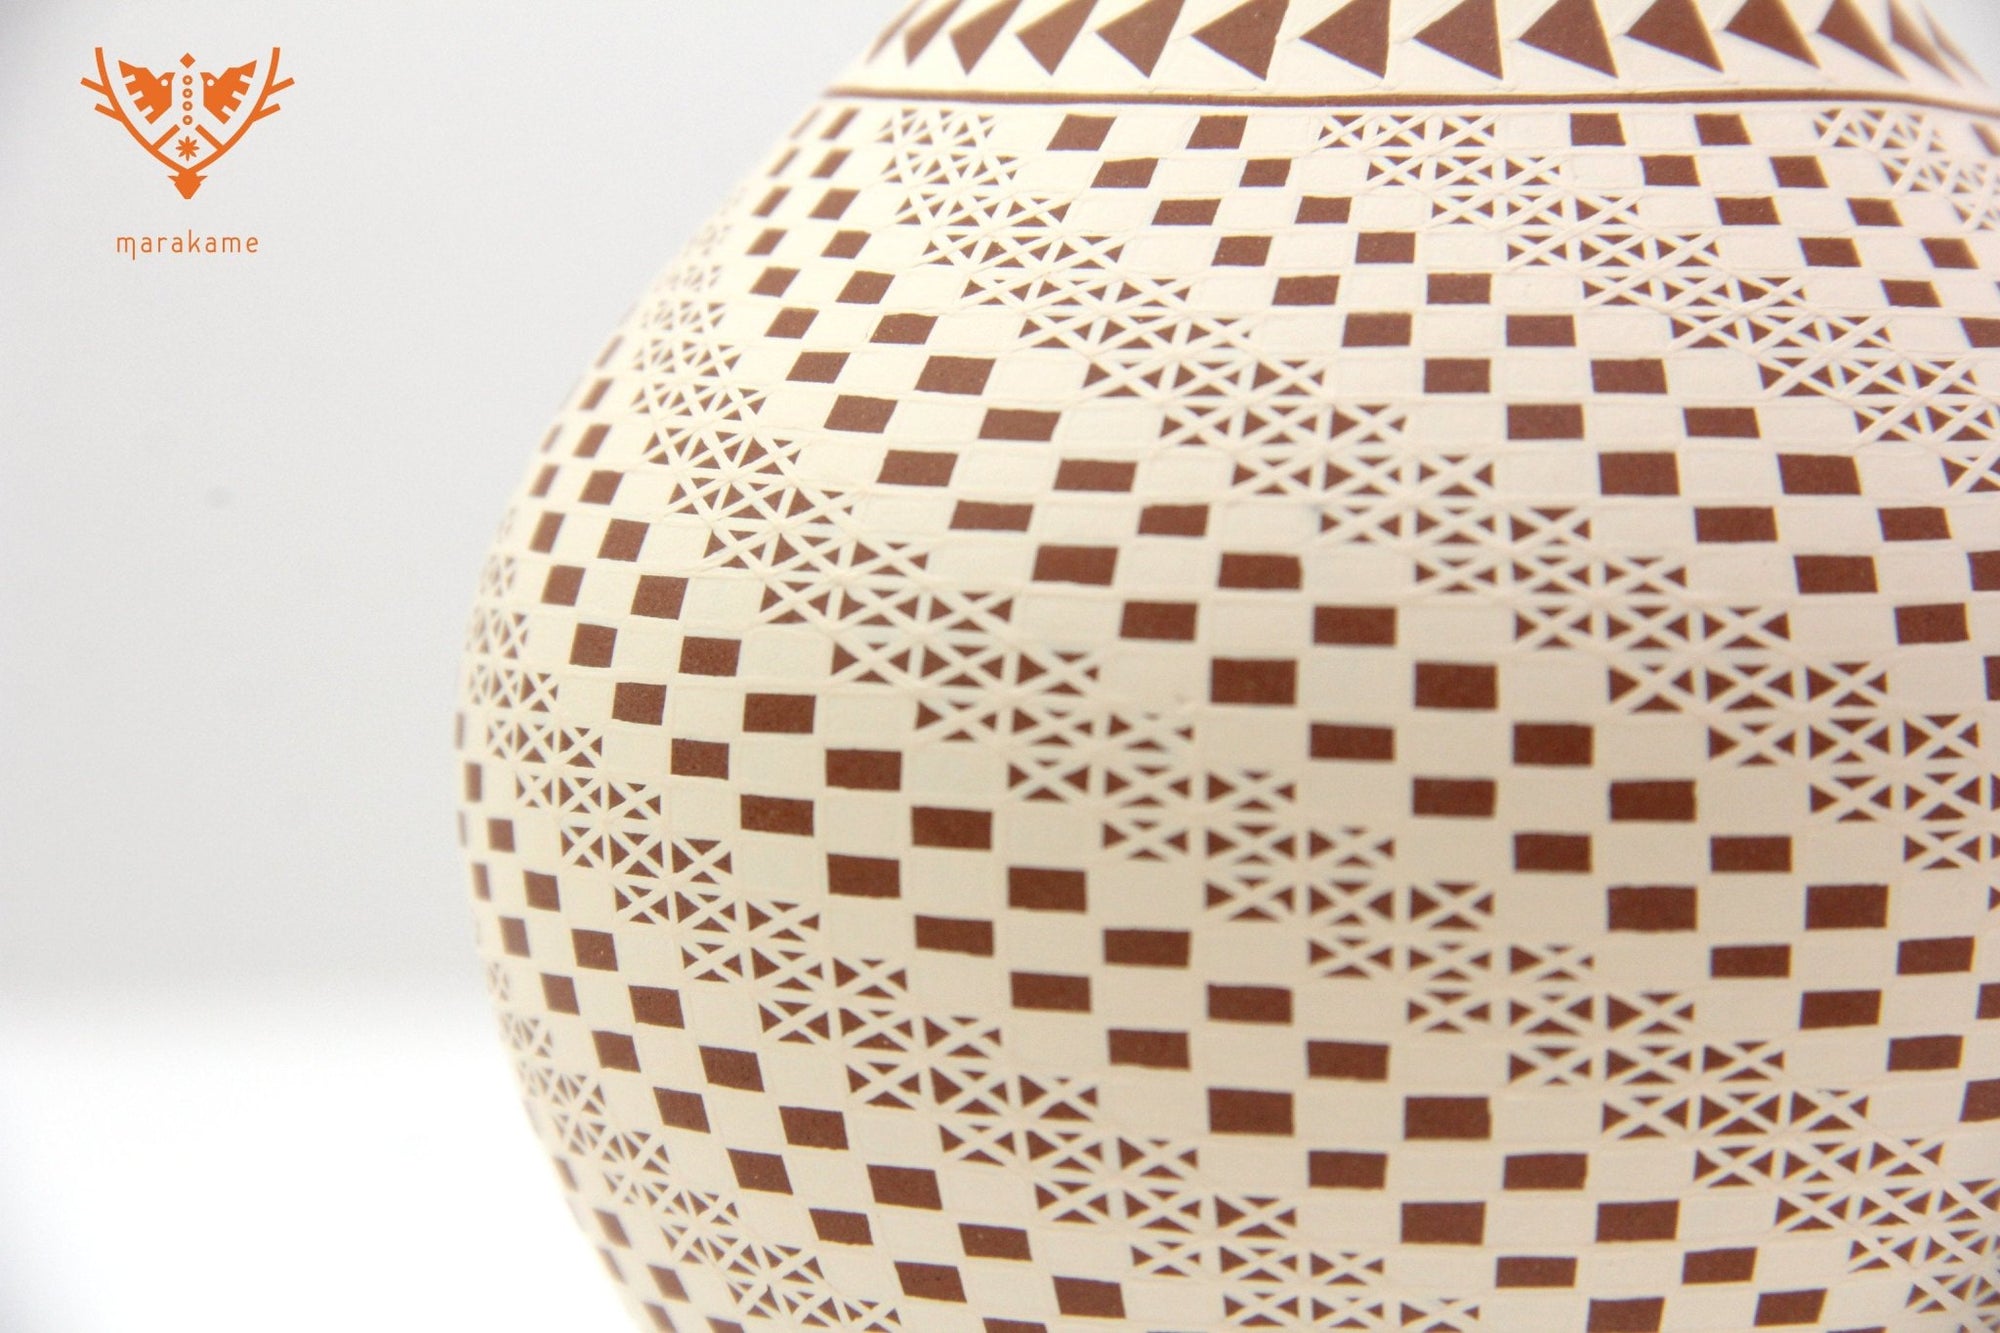 Ceramica Mata Ortiz - Piccolo Pezzo - Arte Huichol - Marakame